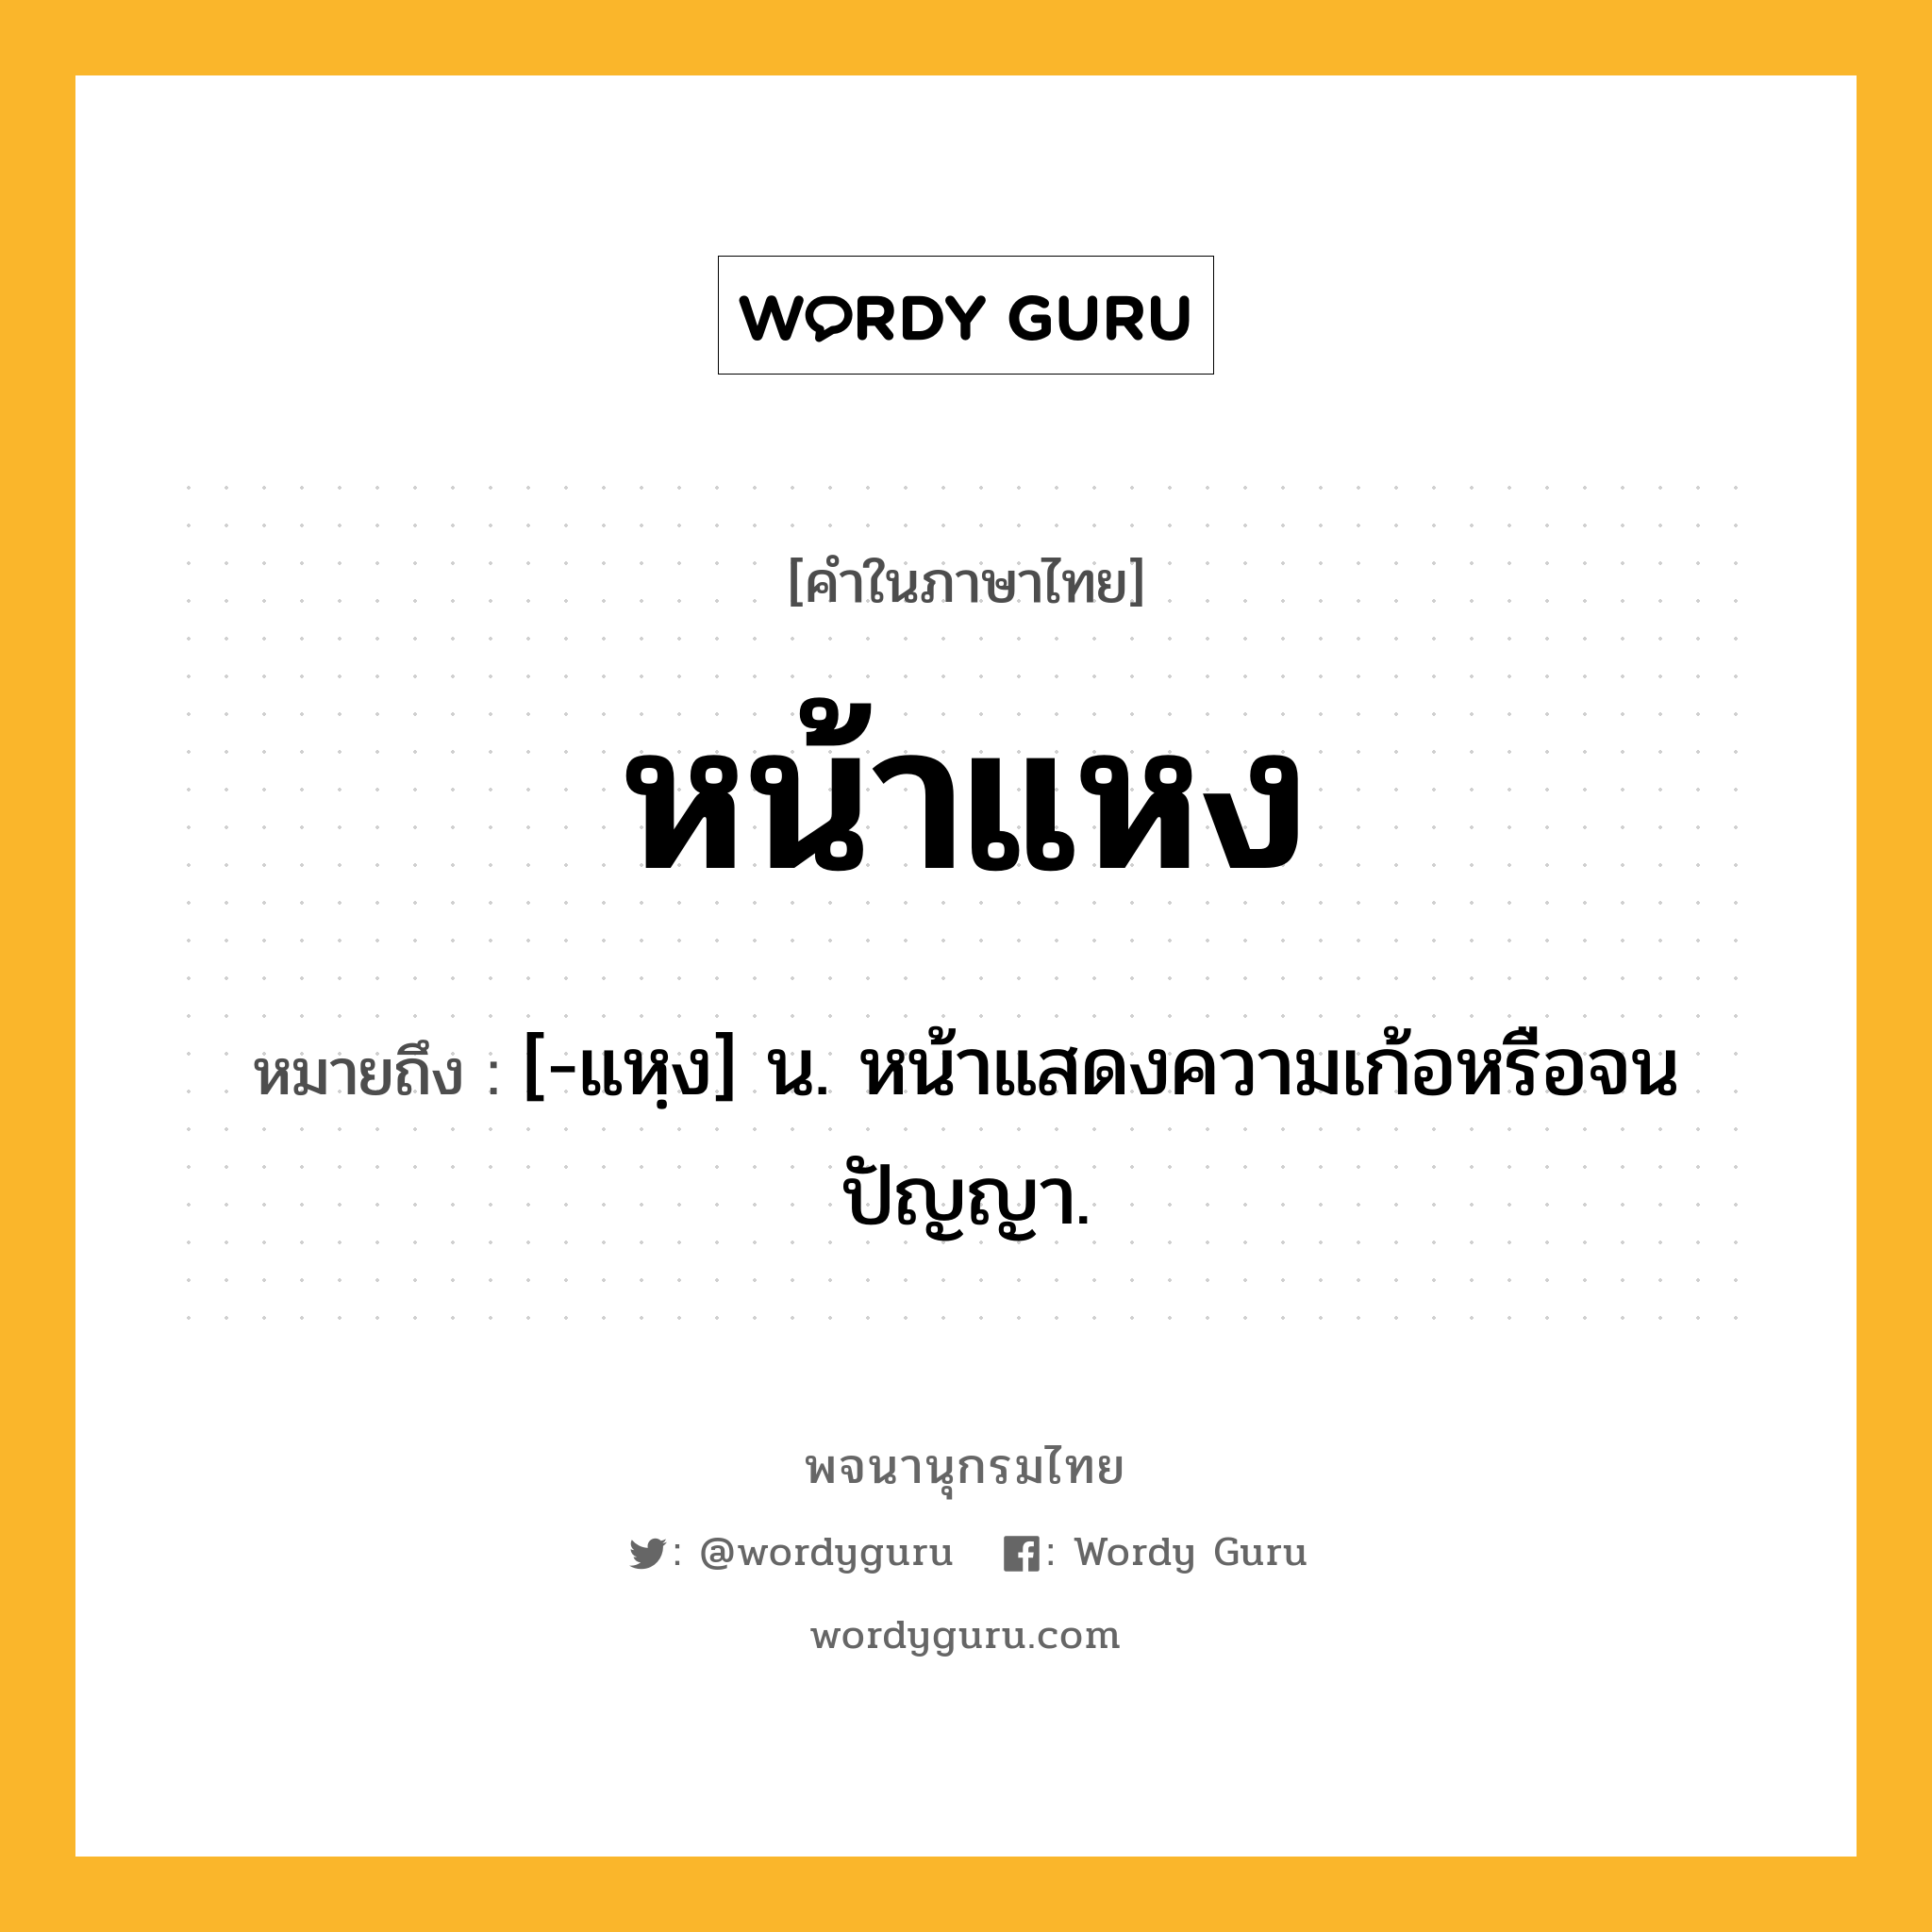 หน้าแหง ความหมาย หมายถึงอะไร?, คำในภาษาไทย หน้าแหง หมายถึง [-แหฺง] น. หน้าแสดงความเก้อหรือจนปัญญา.